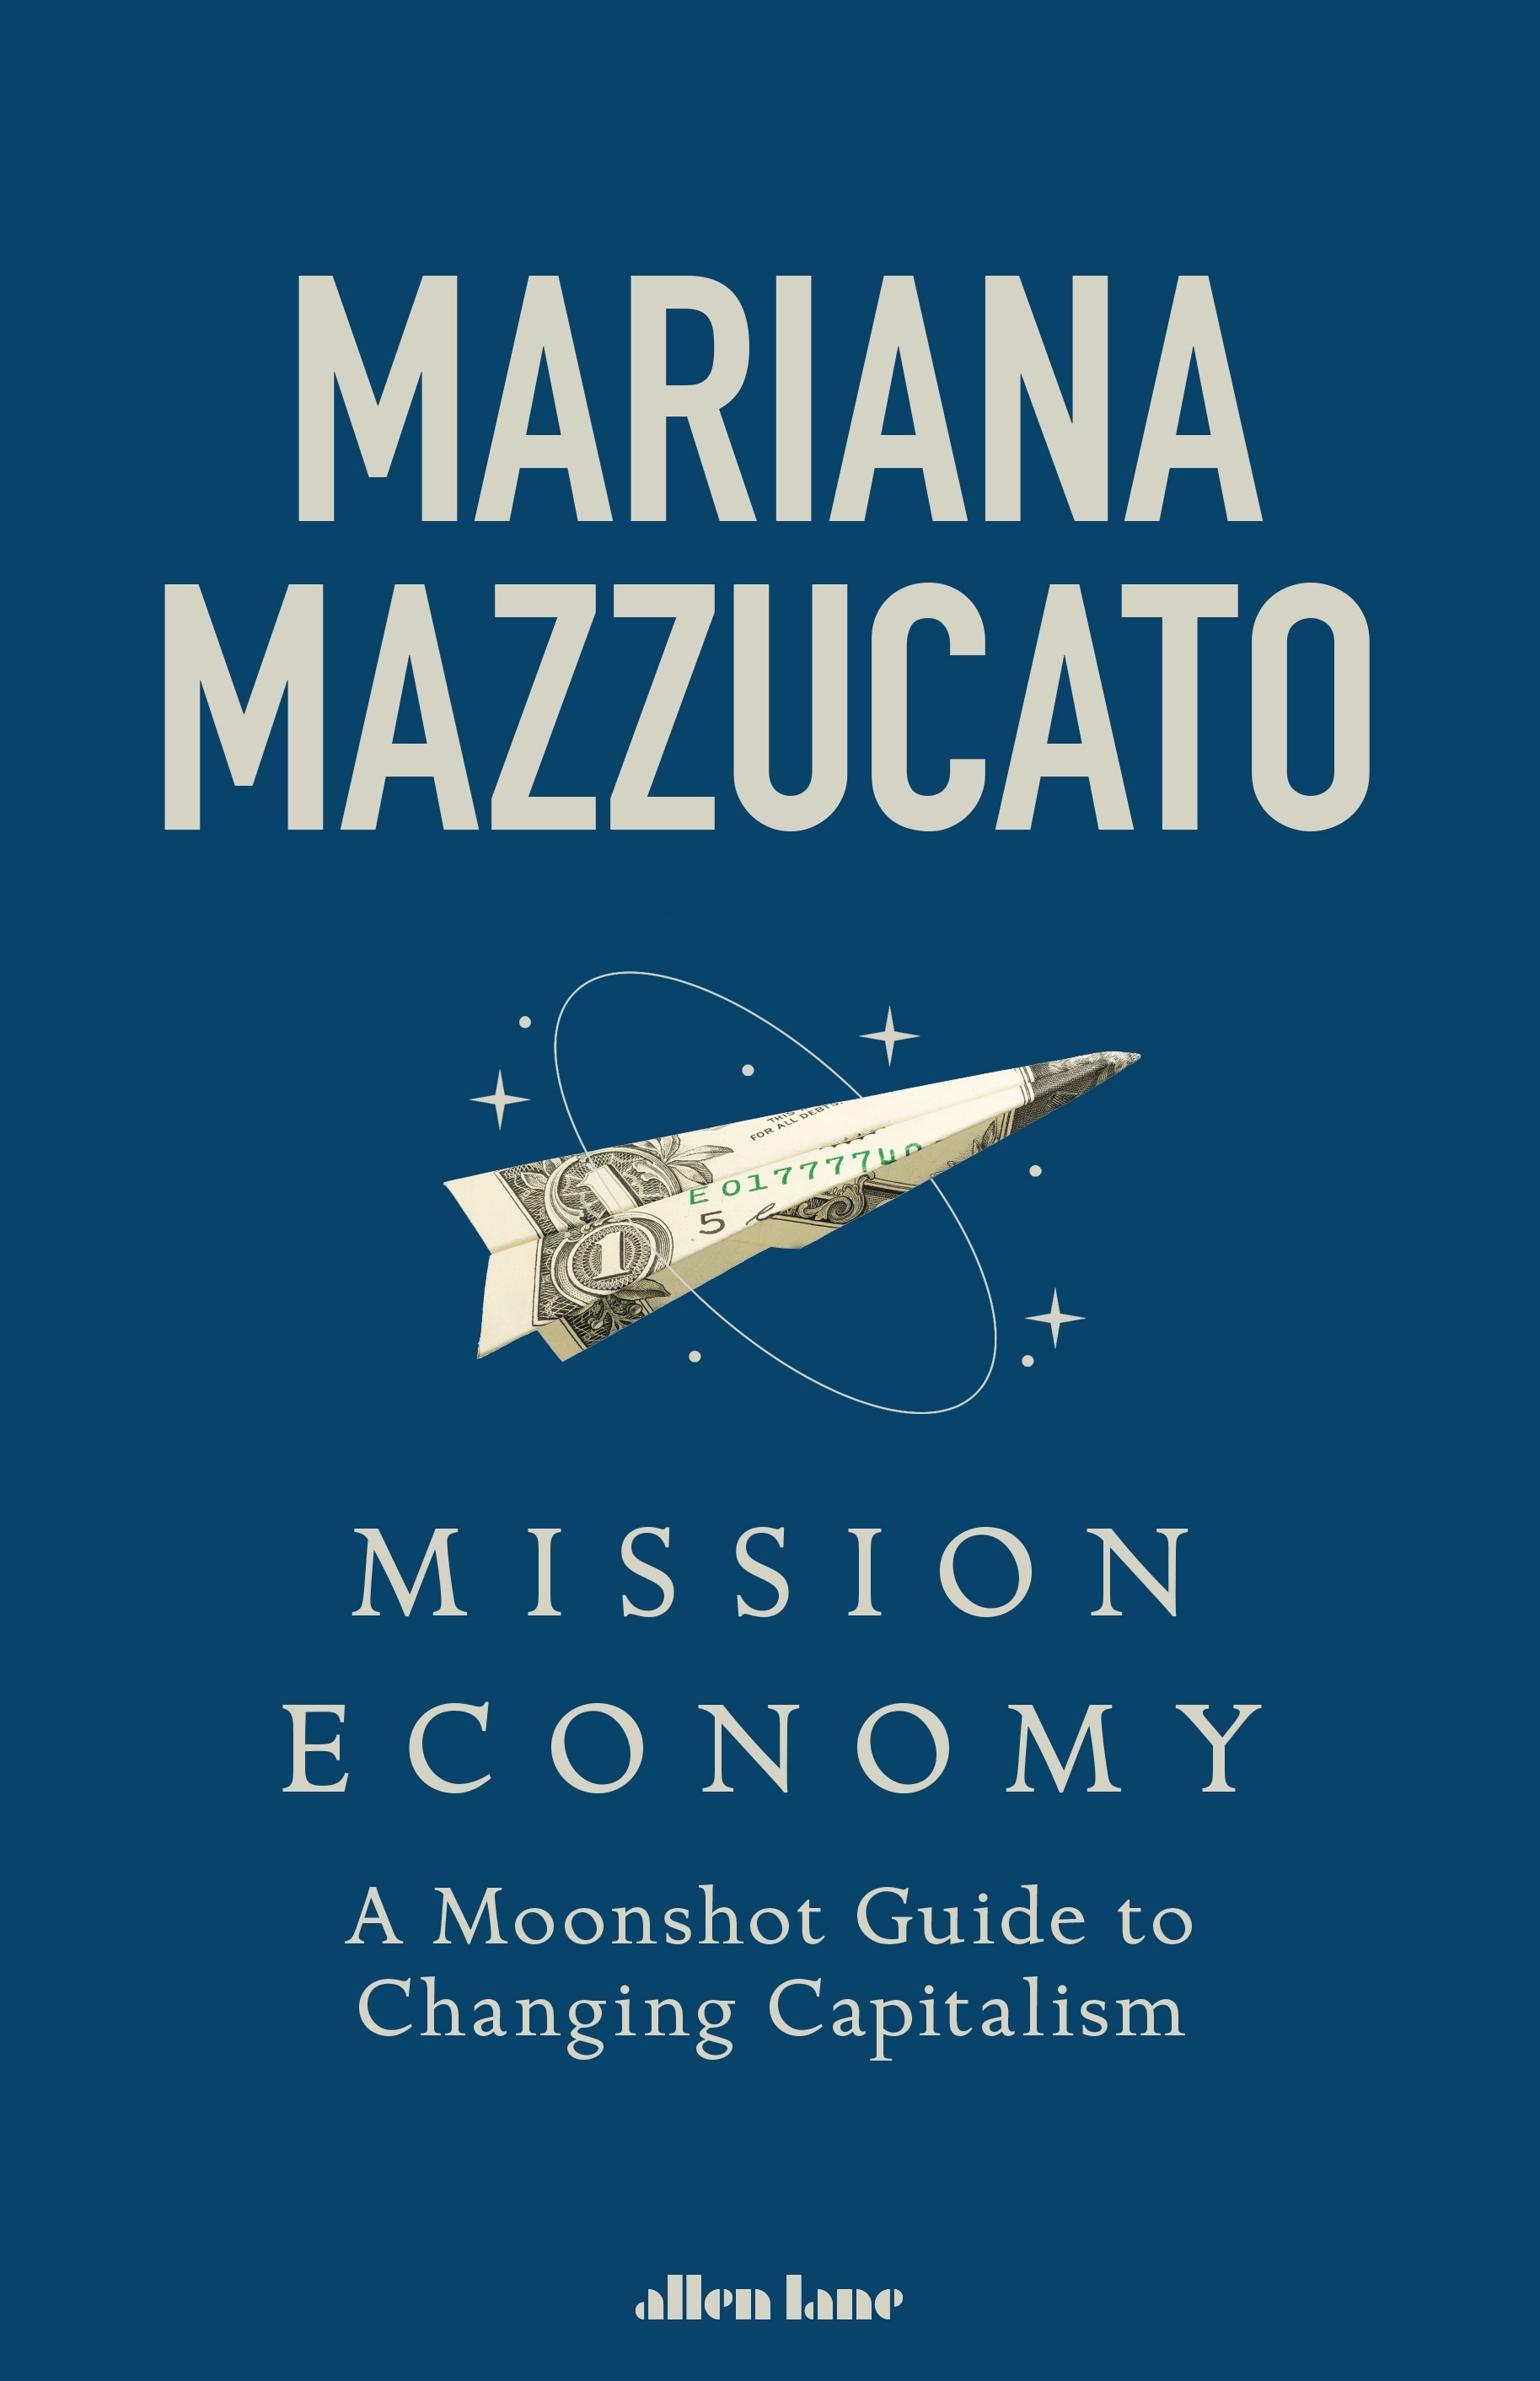 Book “Mission Economy” by Mariana Mazzucato — January 28, 2021